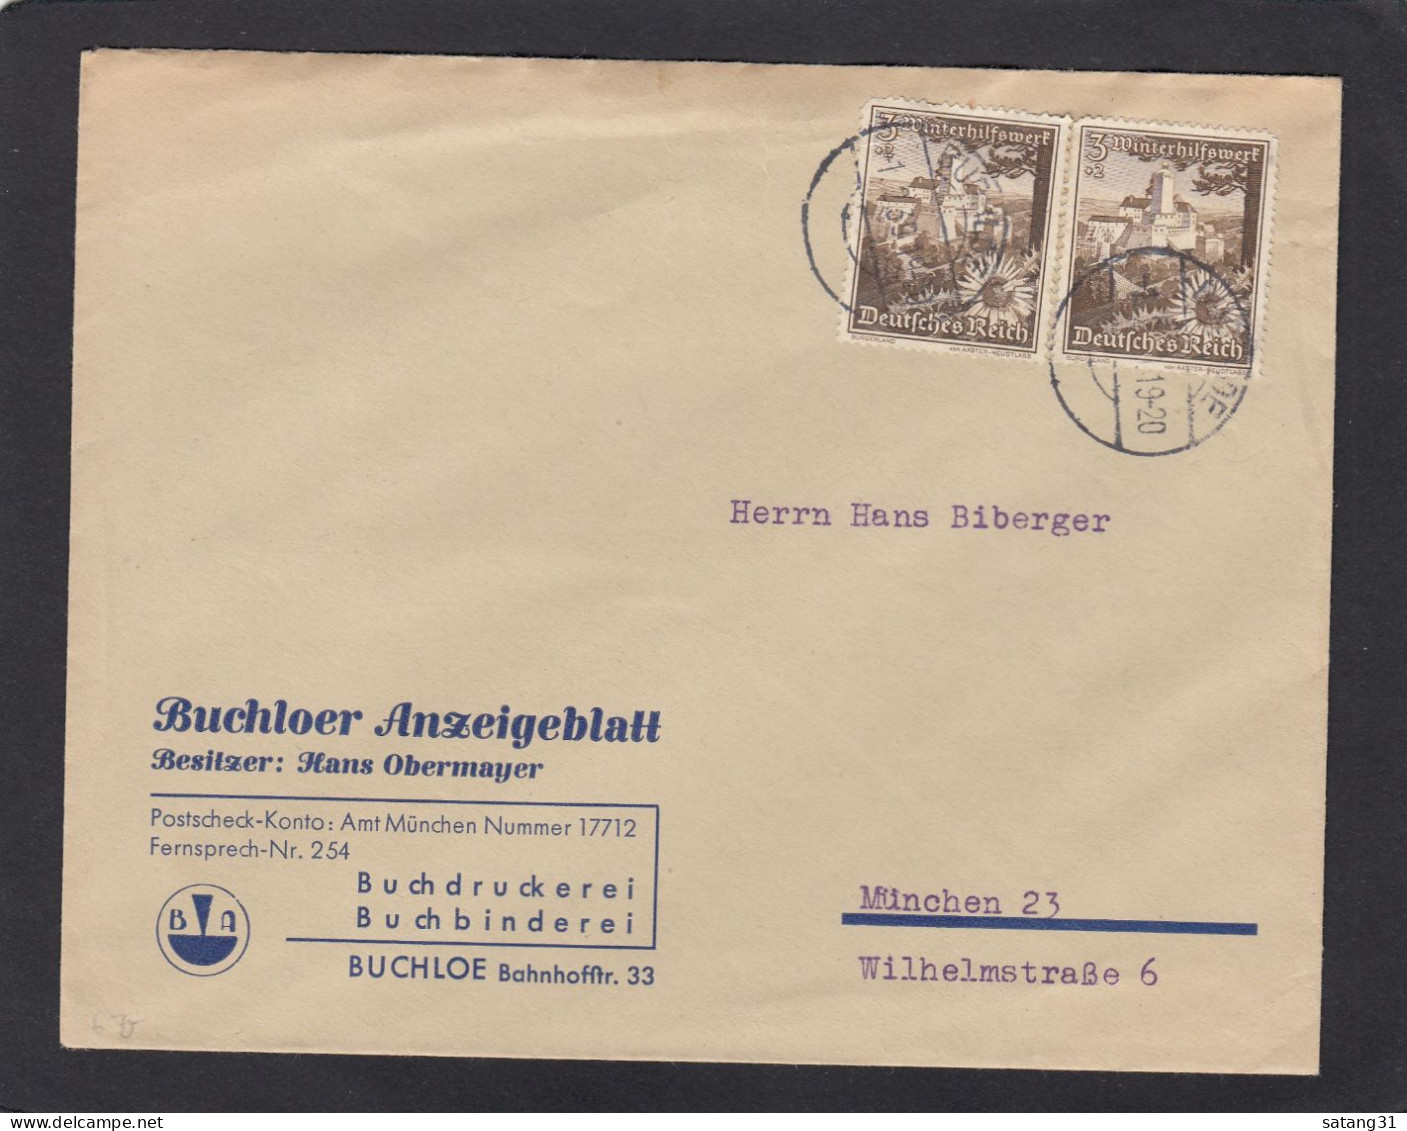 BUCHLOER ANZEIGEBLATT. BRIEF AUS BUCHLOE NACH MÜNCHEN,1939. - Briefe U. Dokumente